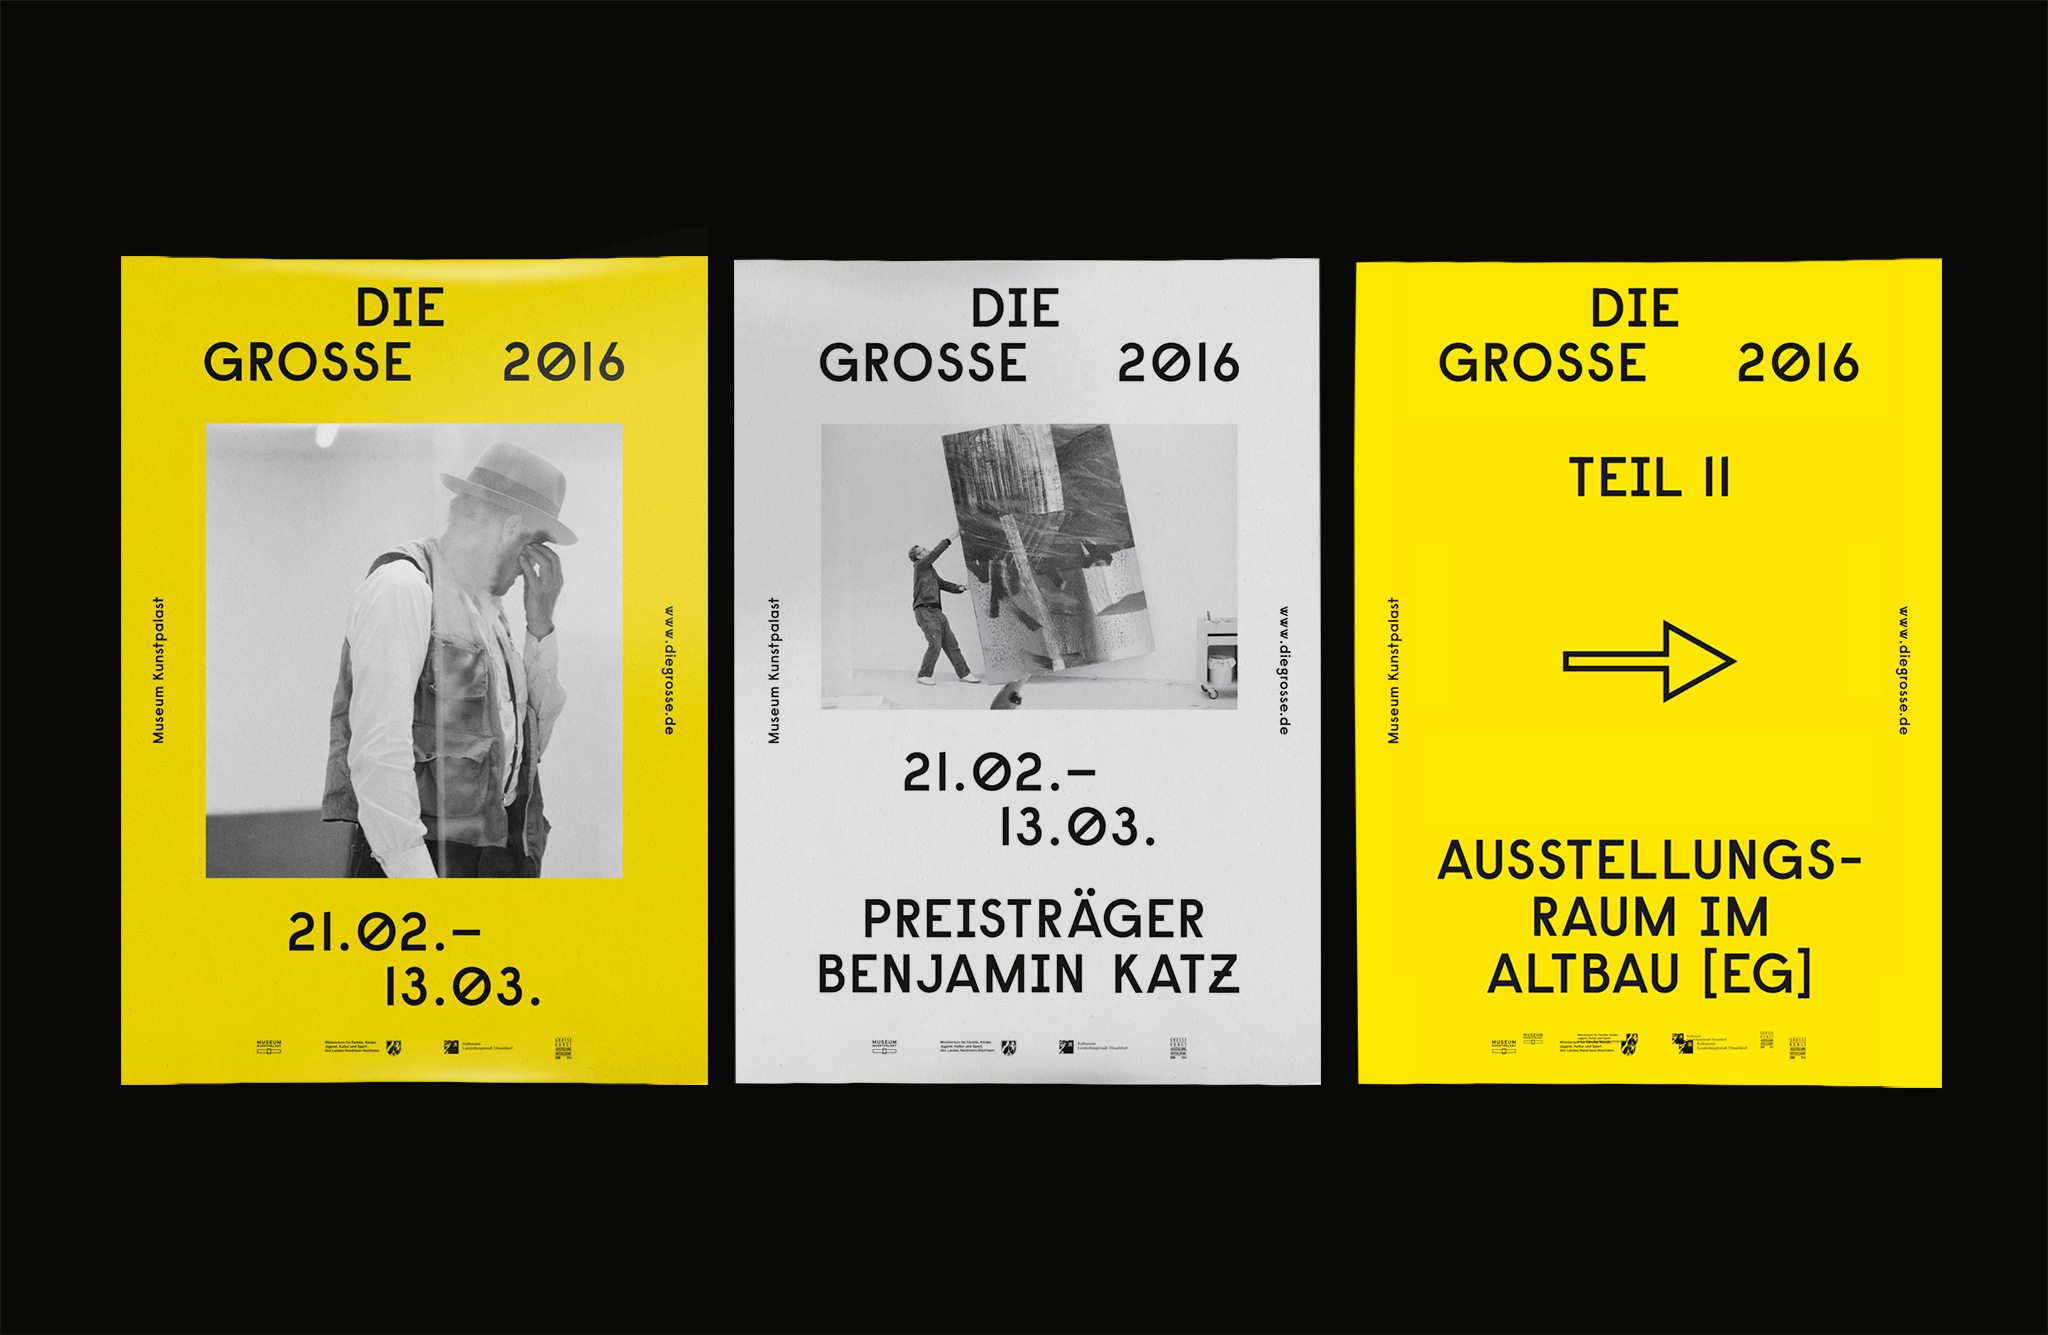 Poster Vorder- und Rückseite auf schwarzem Grund / Poster front and back on black background